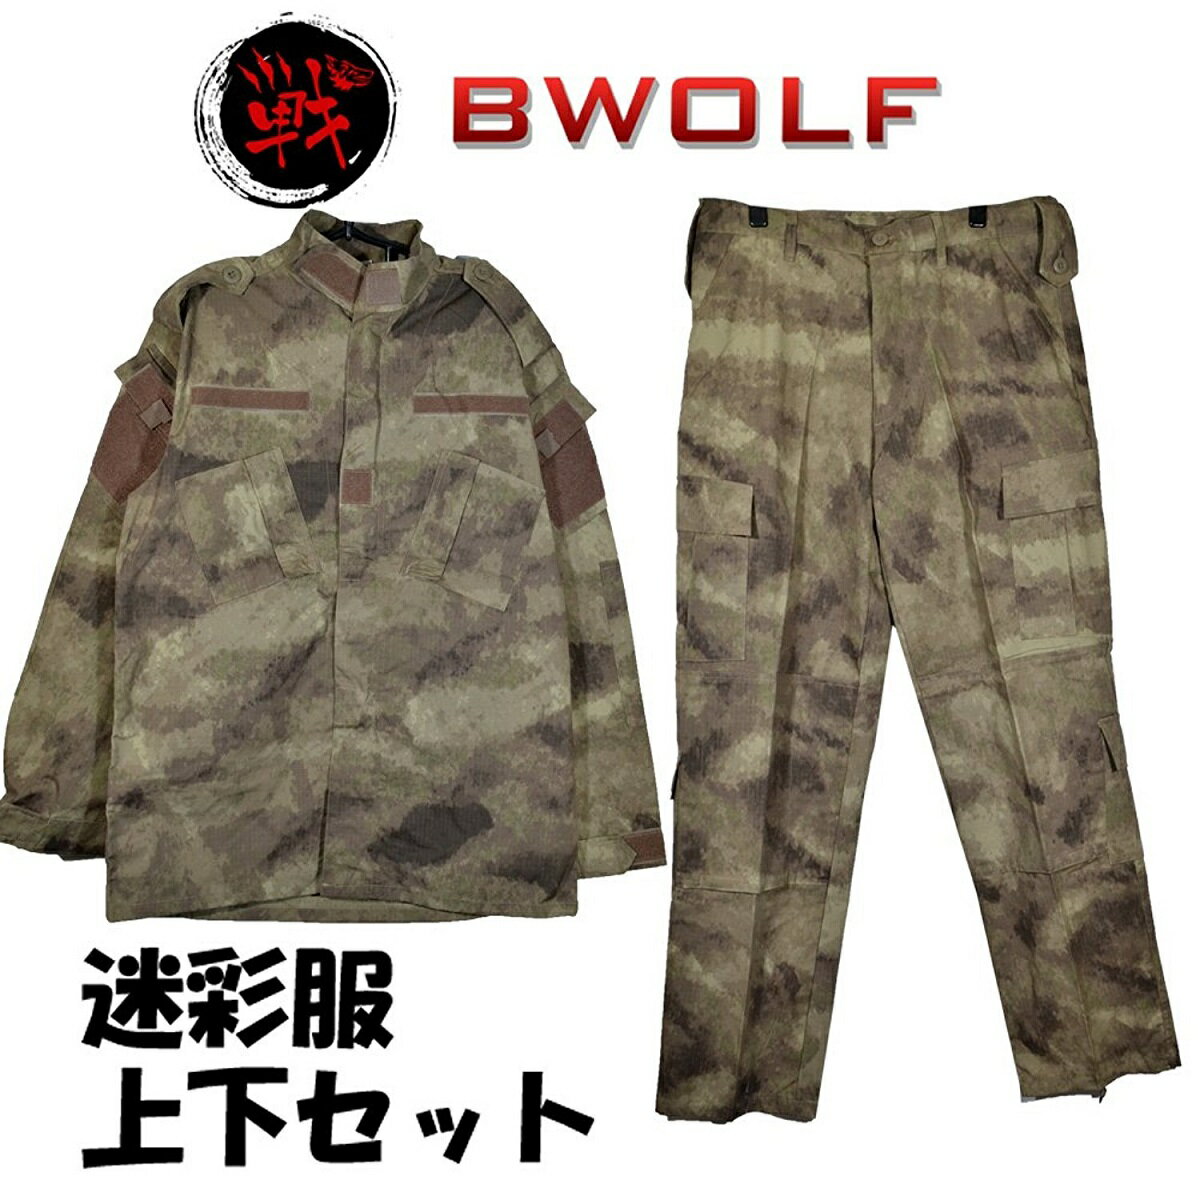 【送料無料】BWOLF製 迷彩服 戦闘服 上下セット ATAU迷彩 子供 女性用 小さいサイズ